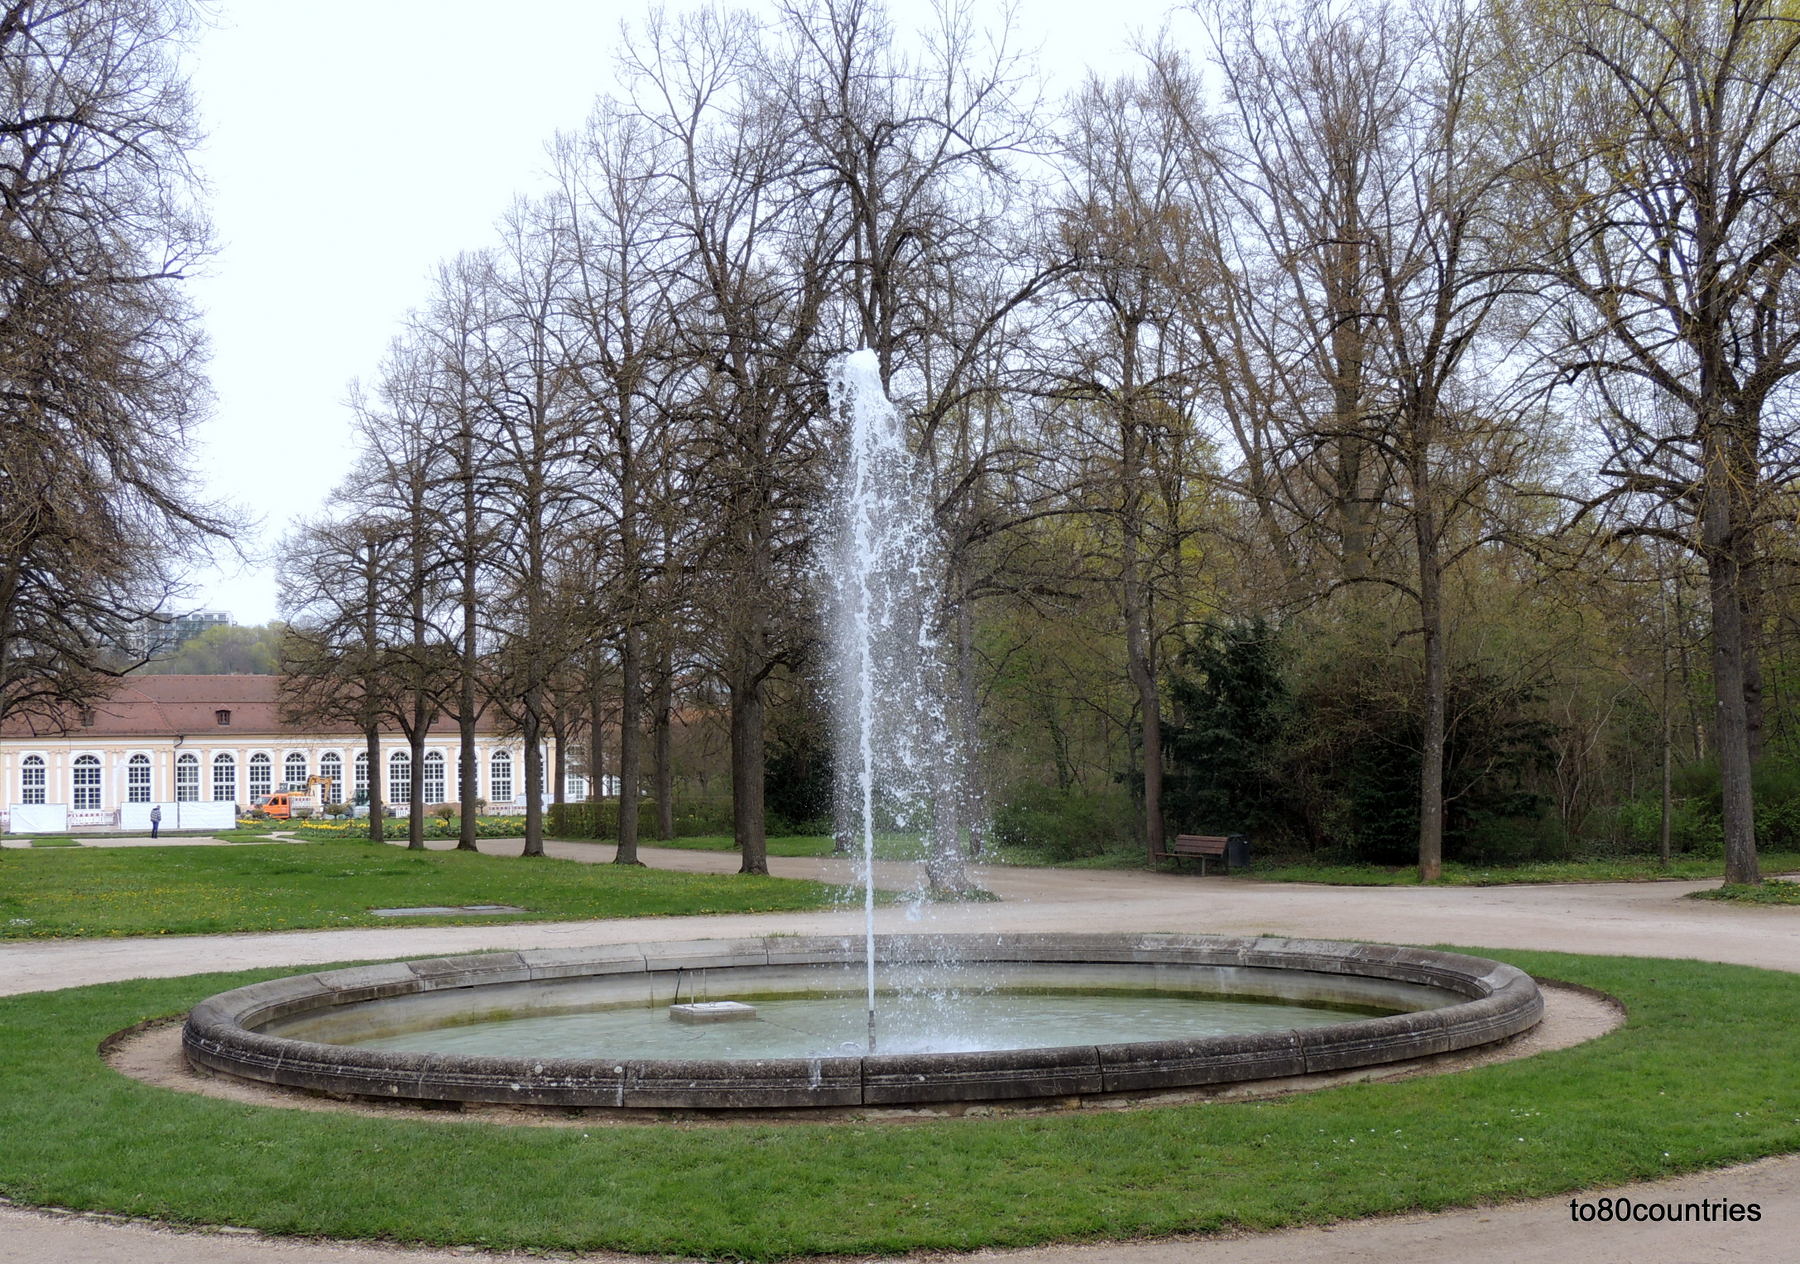 Hofgarten Ansbach